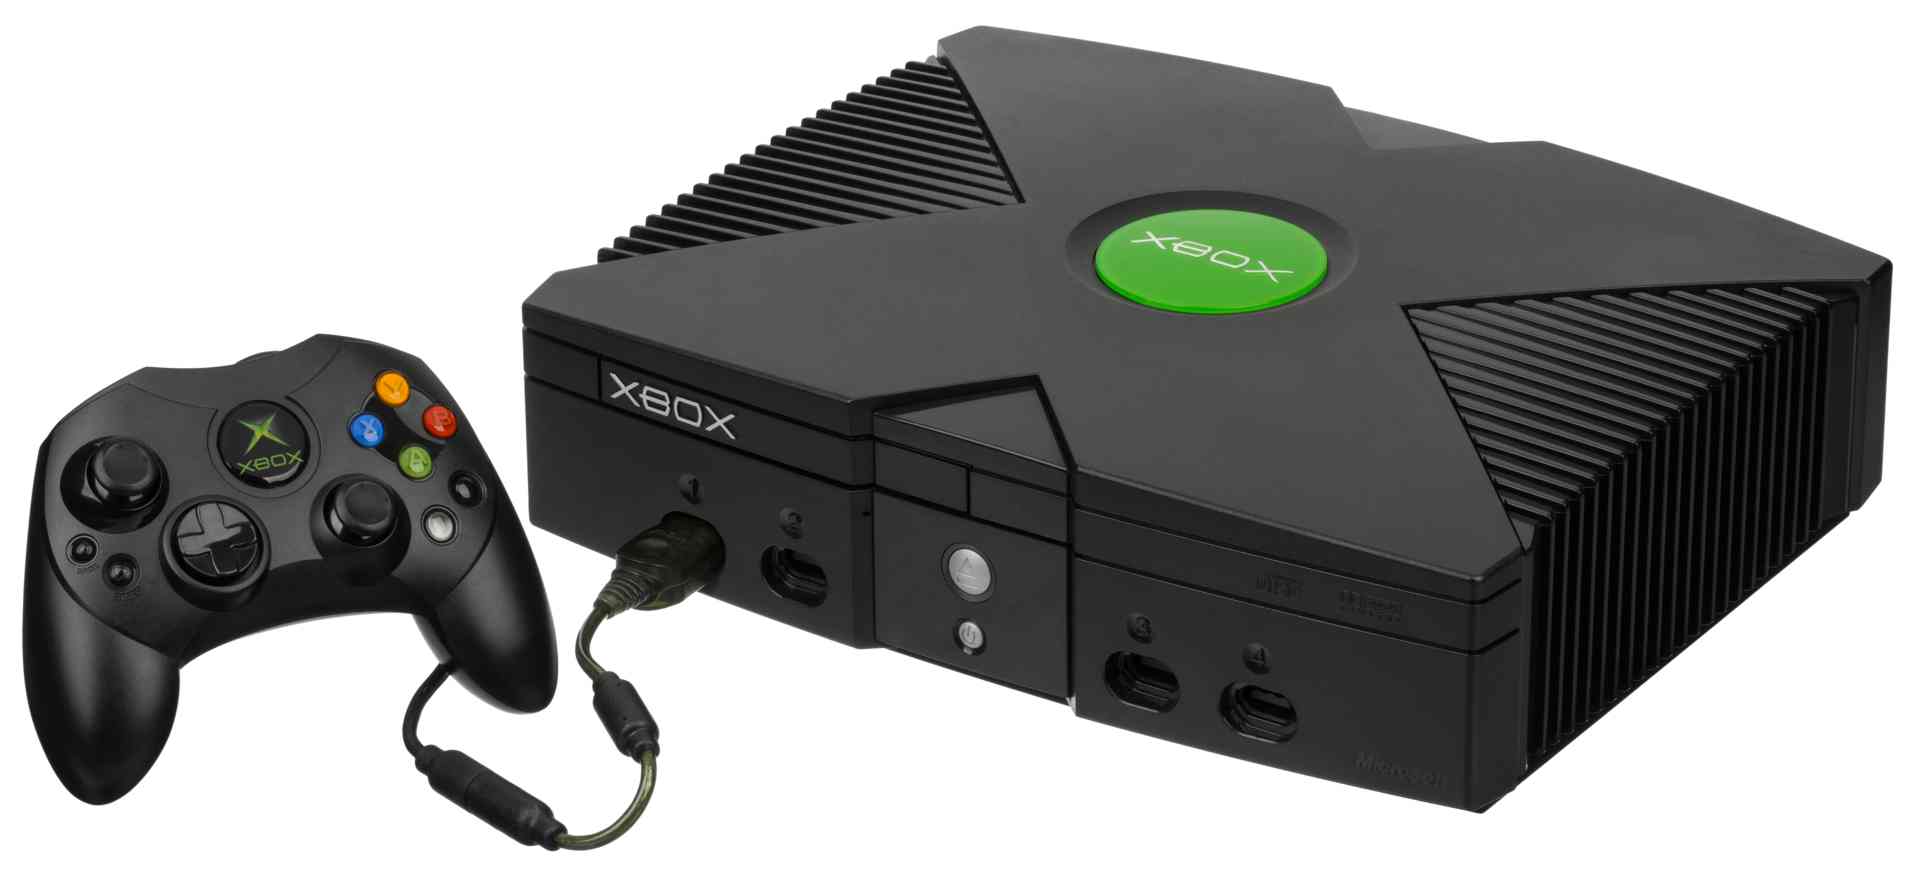 Consola Xbox: las 5 claves de una de las marcas líderes del mercado